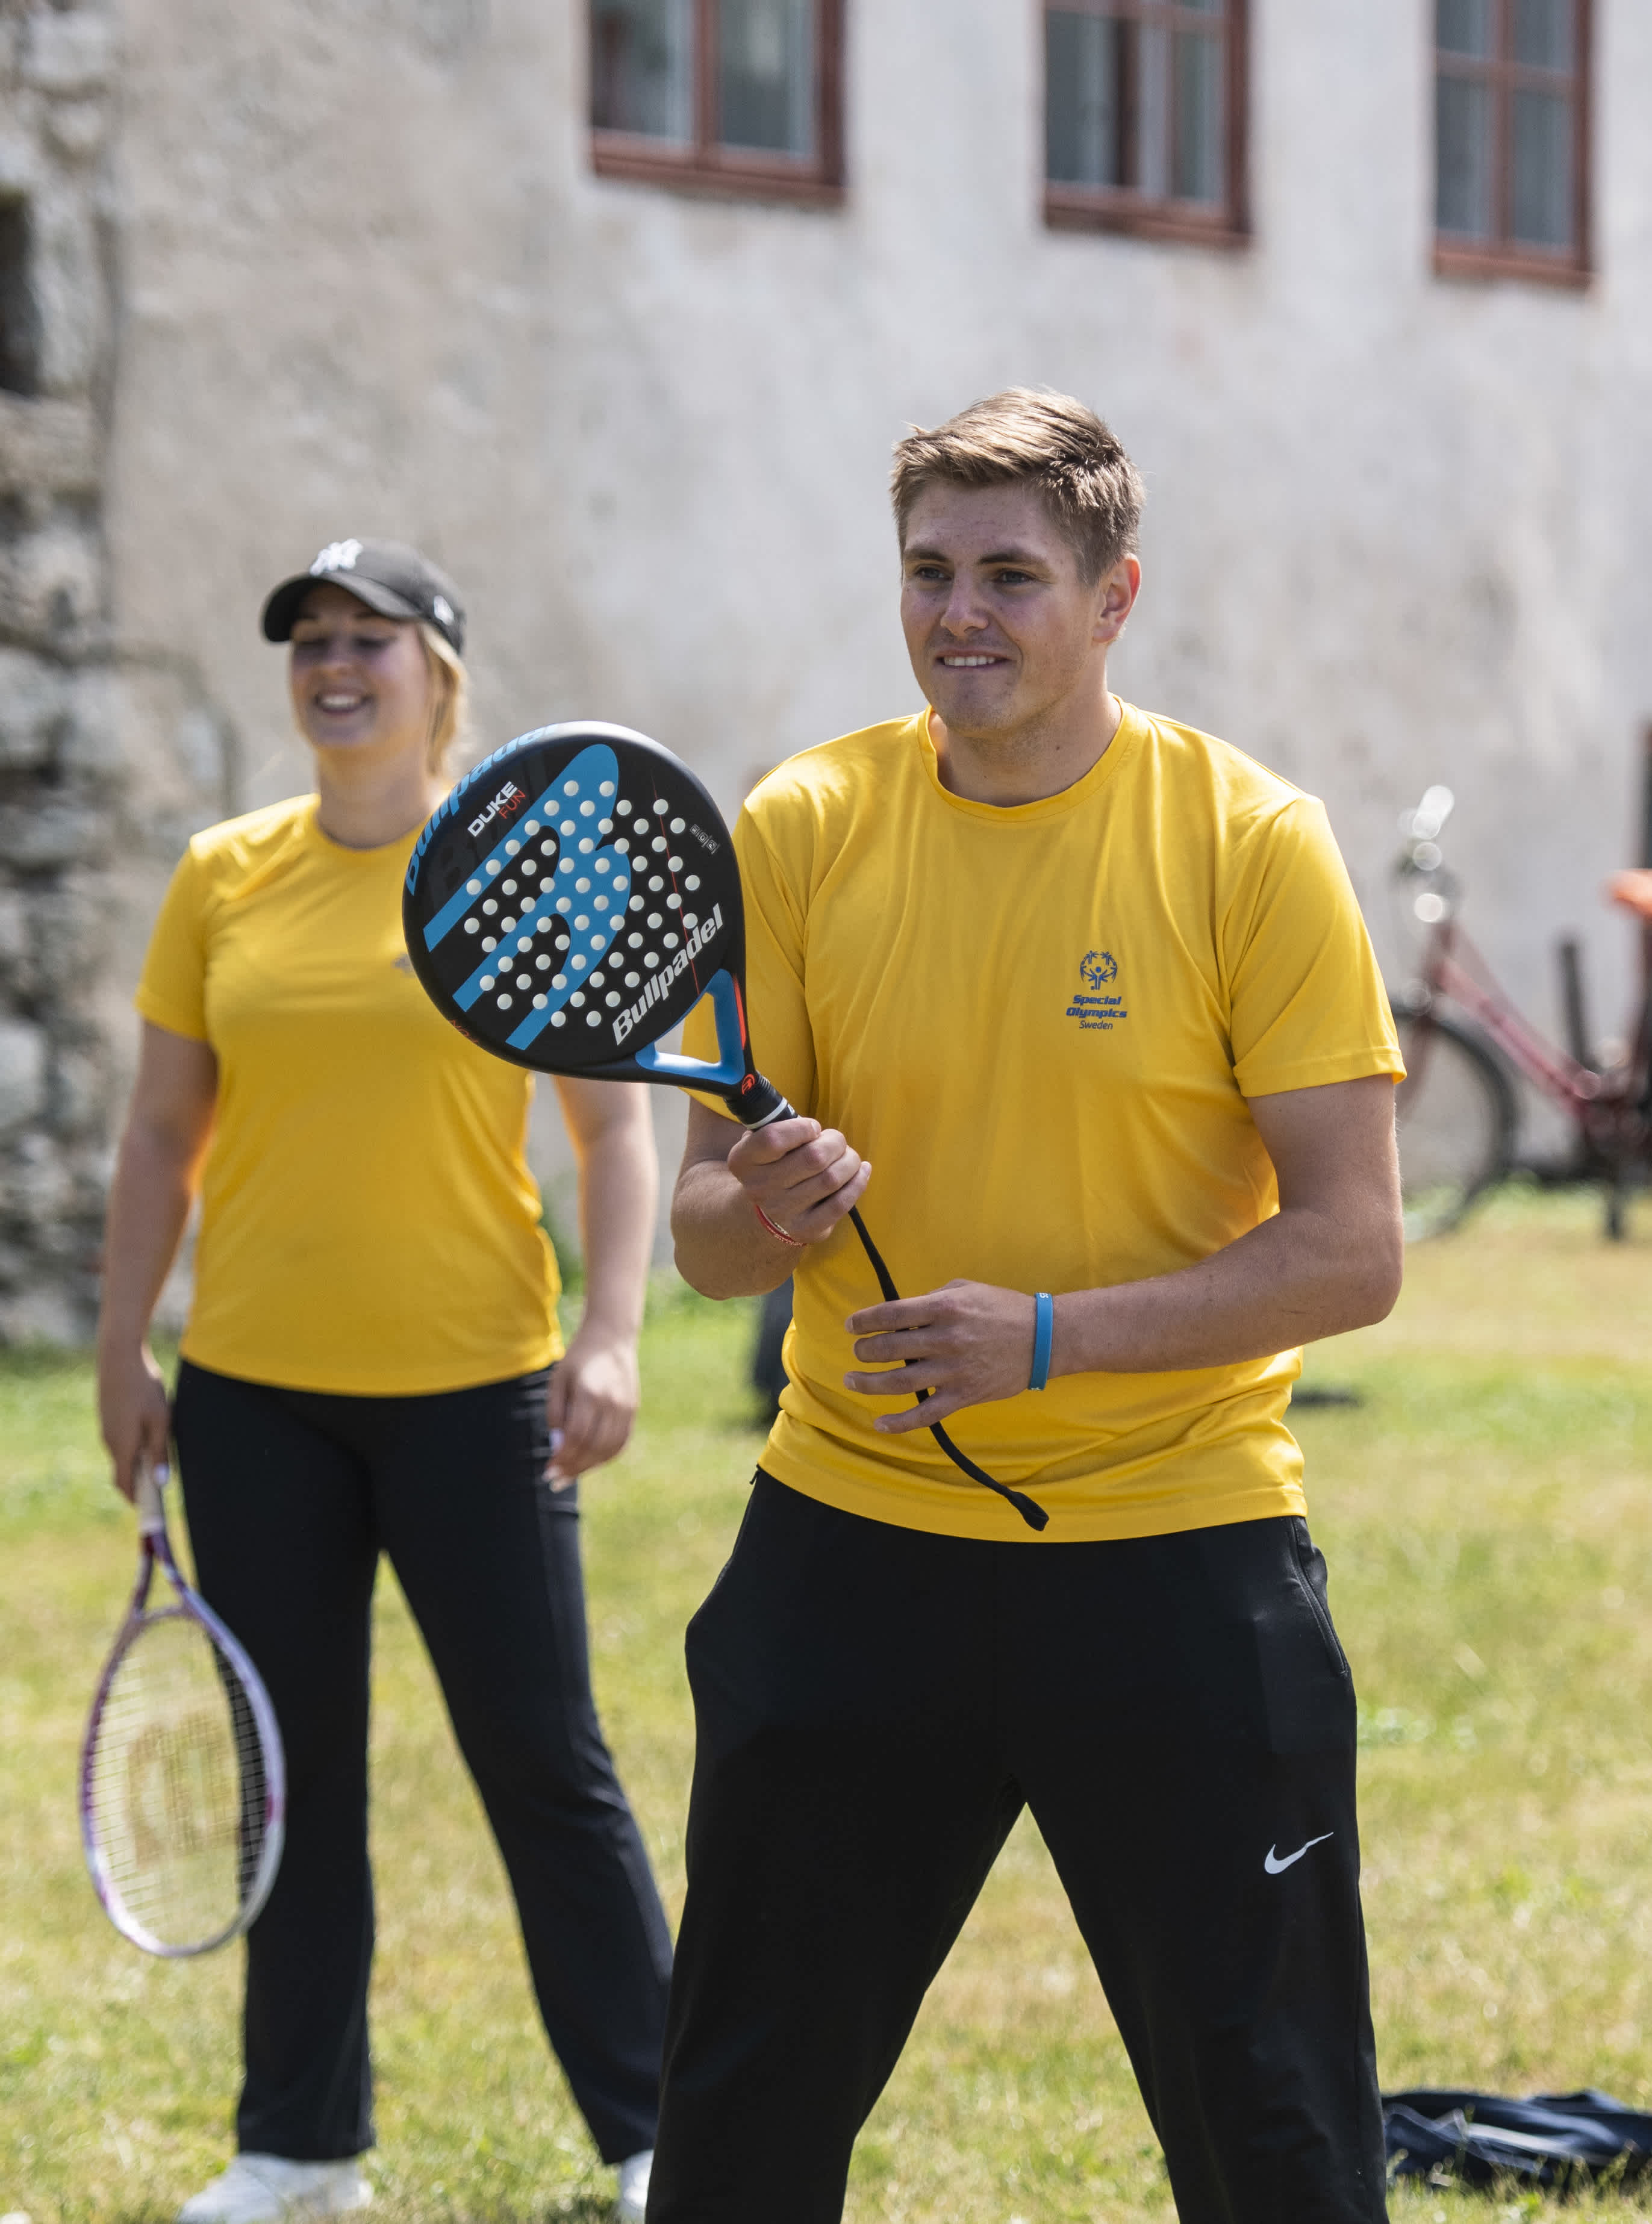 En man och en kvinna i gula tröjor spelar i samma lag. Han står redo med padelracket i höger hand.